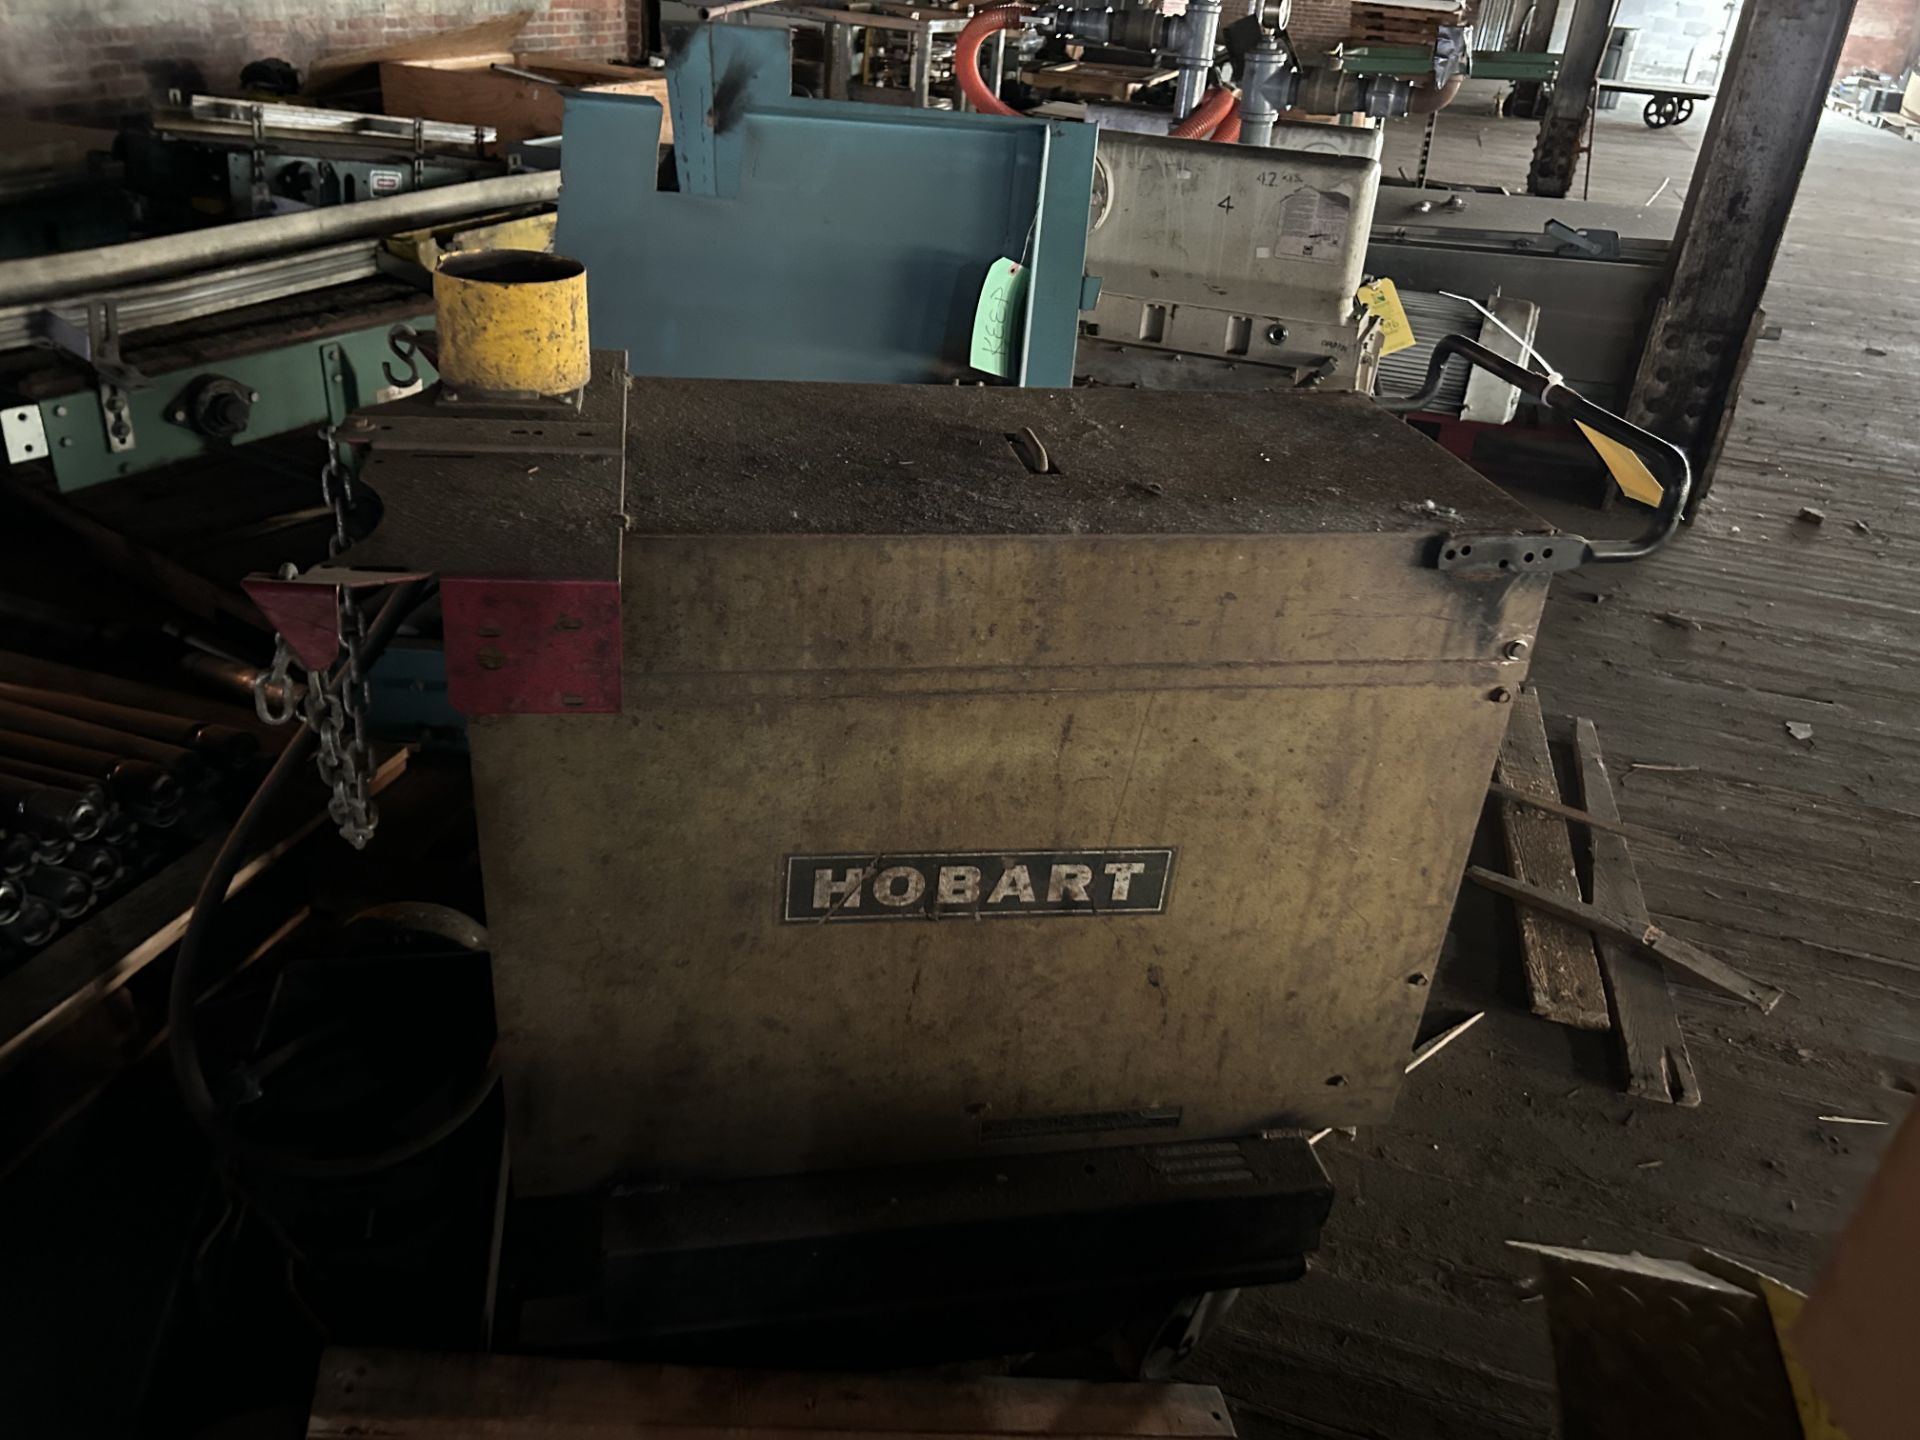 Hobart Welder, Rigging/ Removal Fee, $75